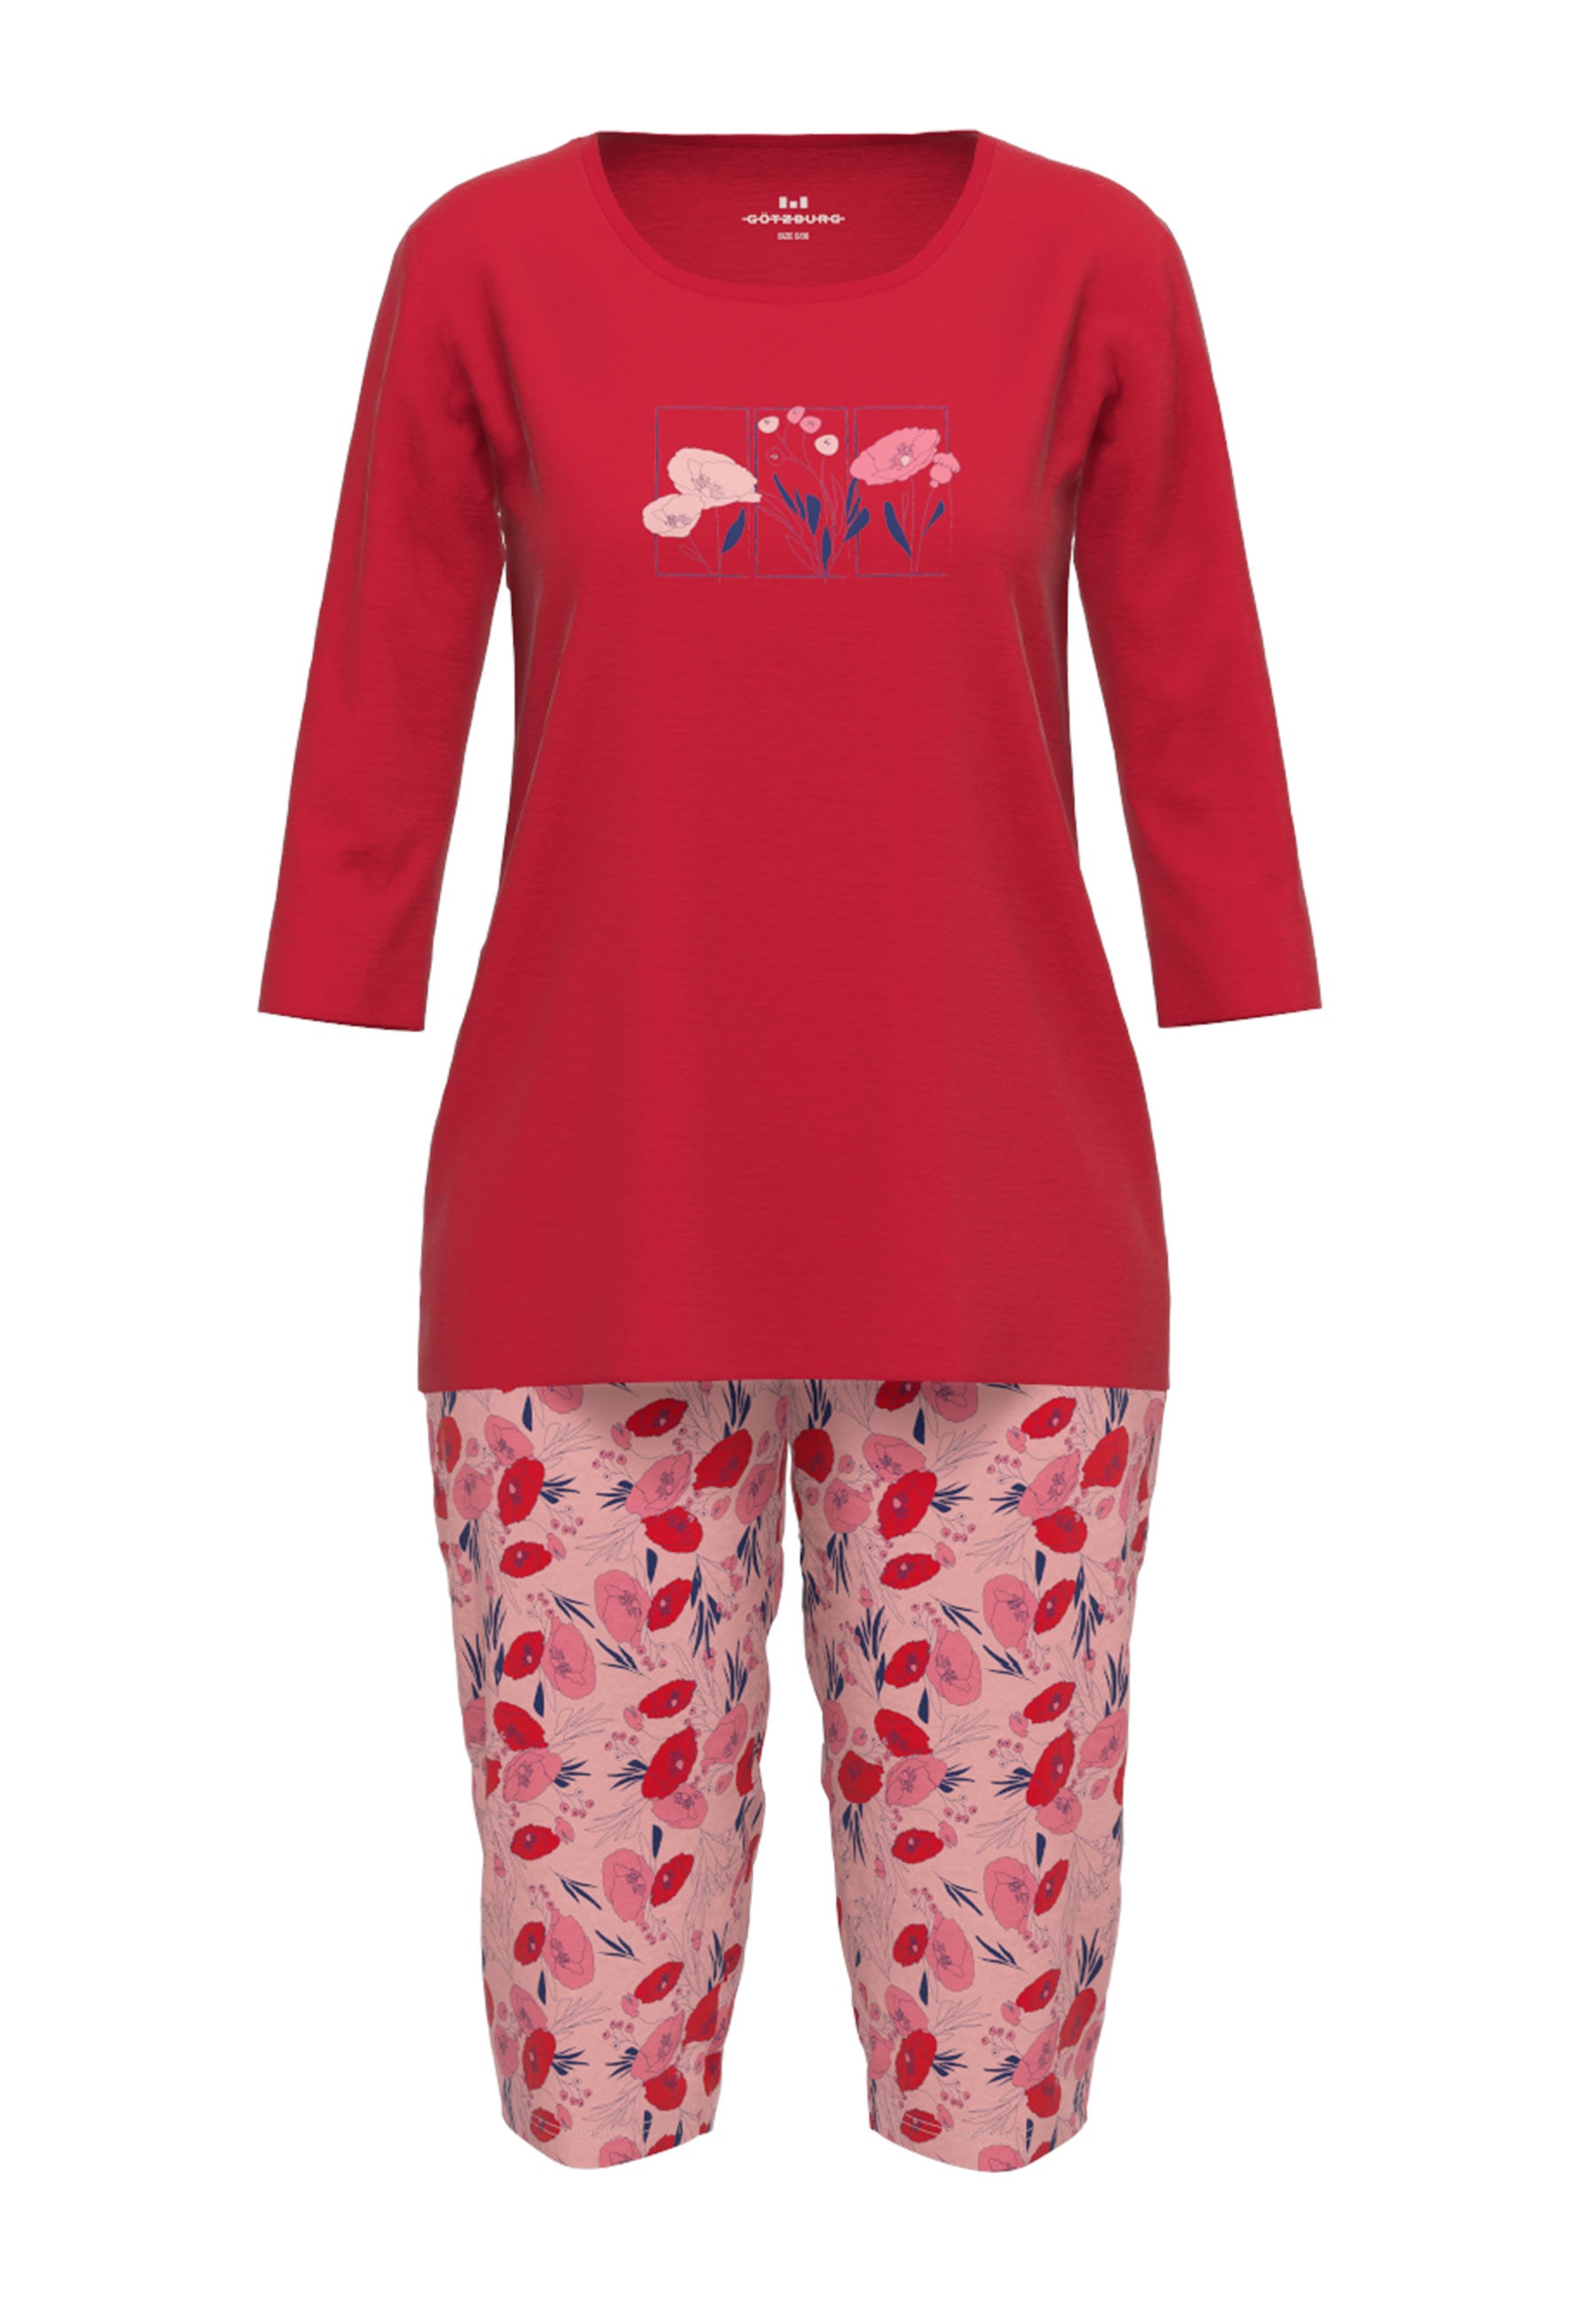 GÖTZBURG Pyjama, ein echter Hingucker mit verspieltem Print und passender Hose